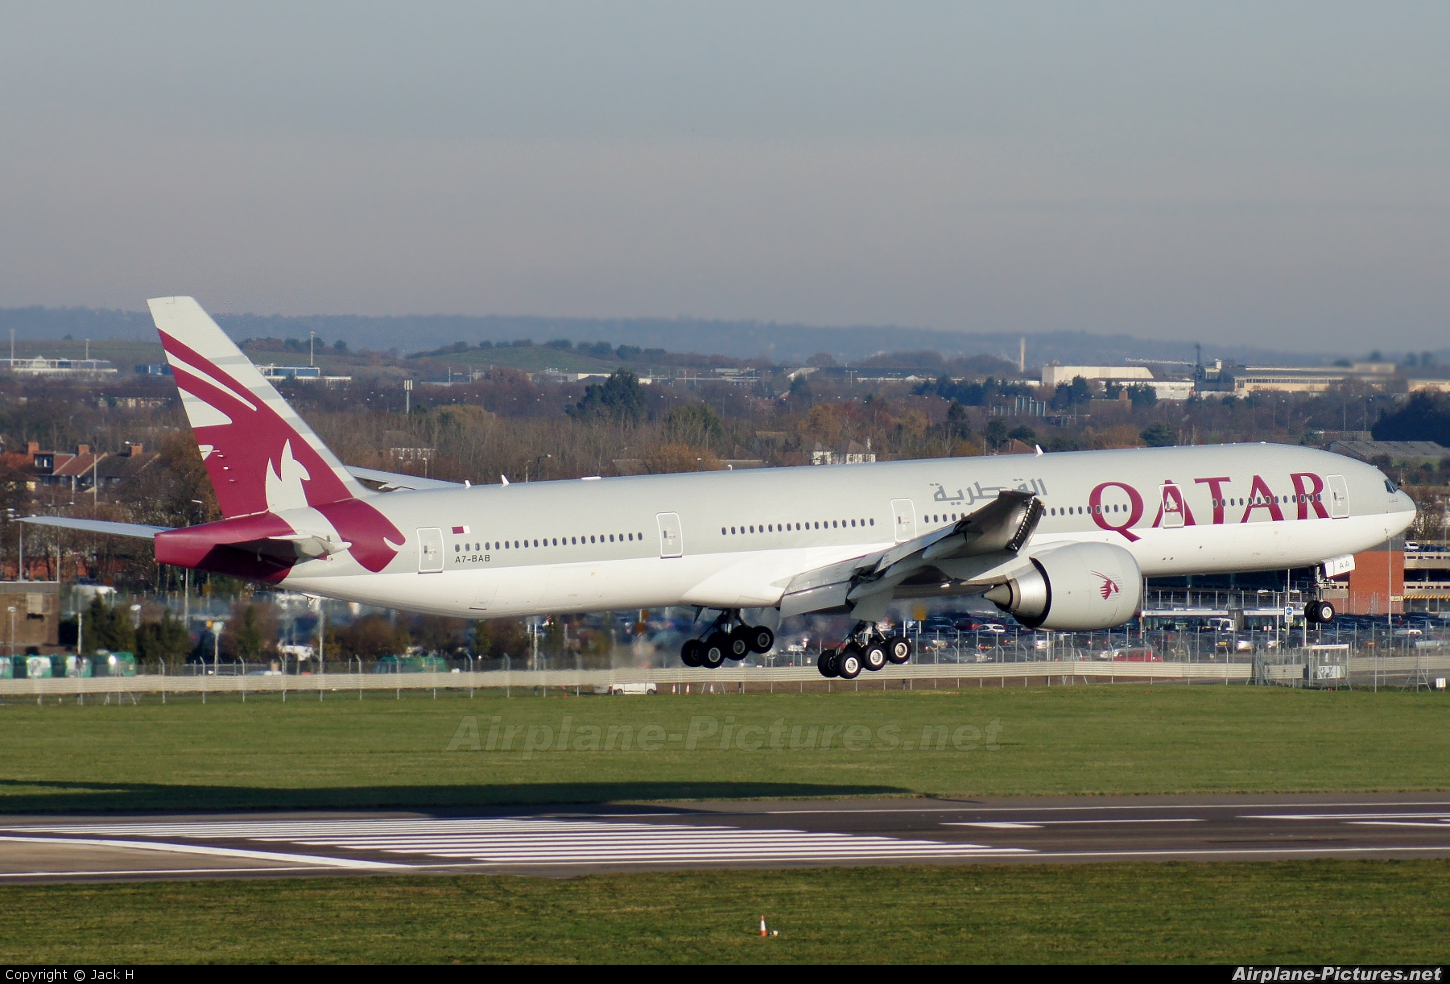 Qatar Airways A7-BAB aircraft at London - Heathrow